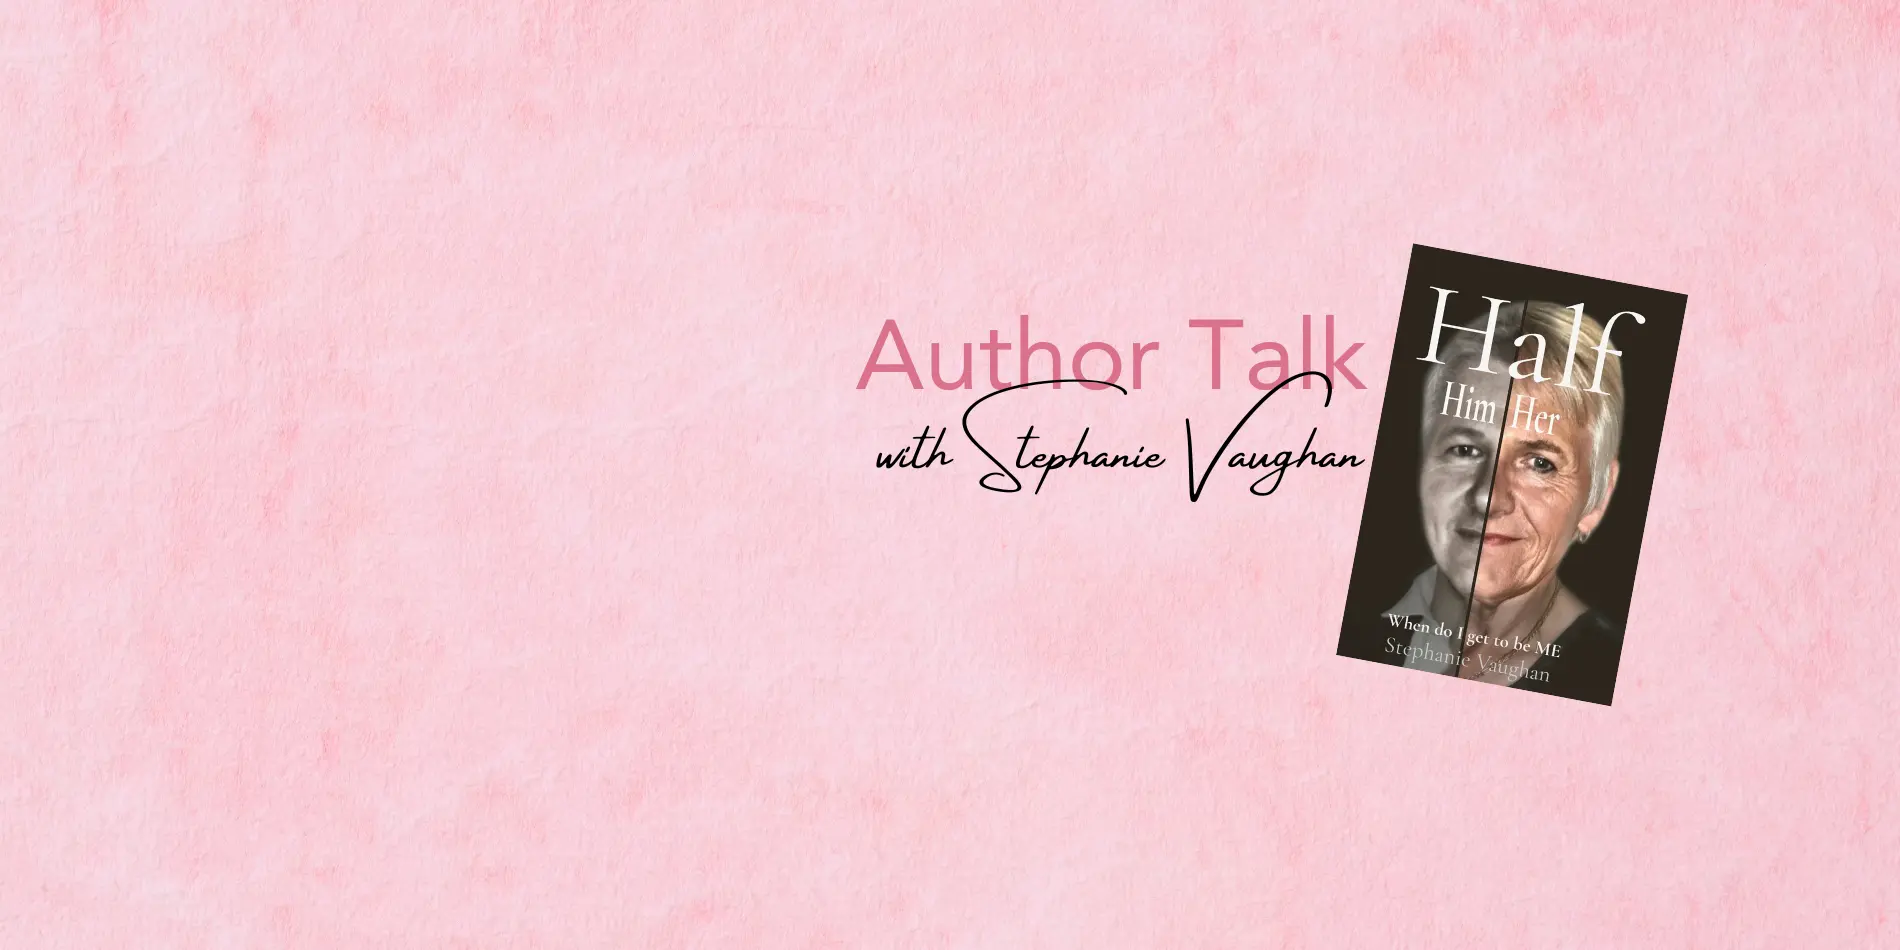 Author Talk with Stephanie Vaughn.